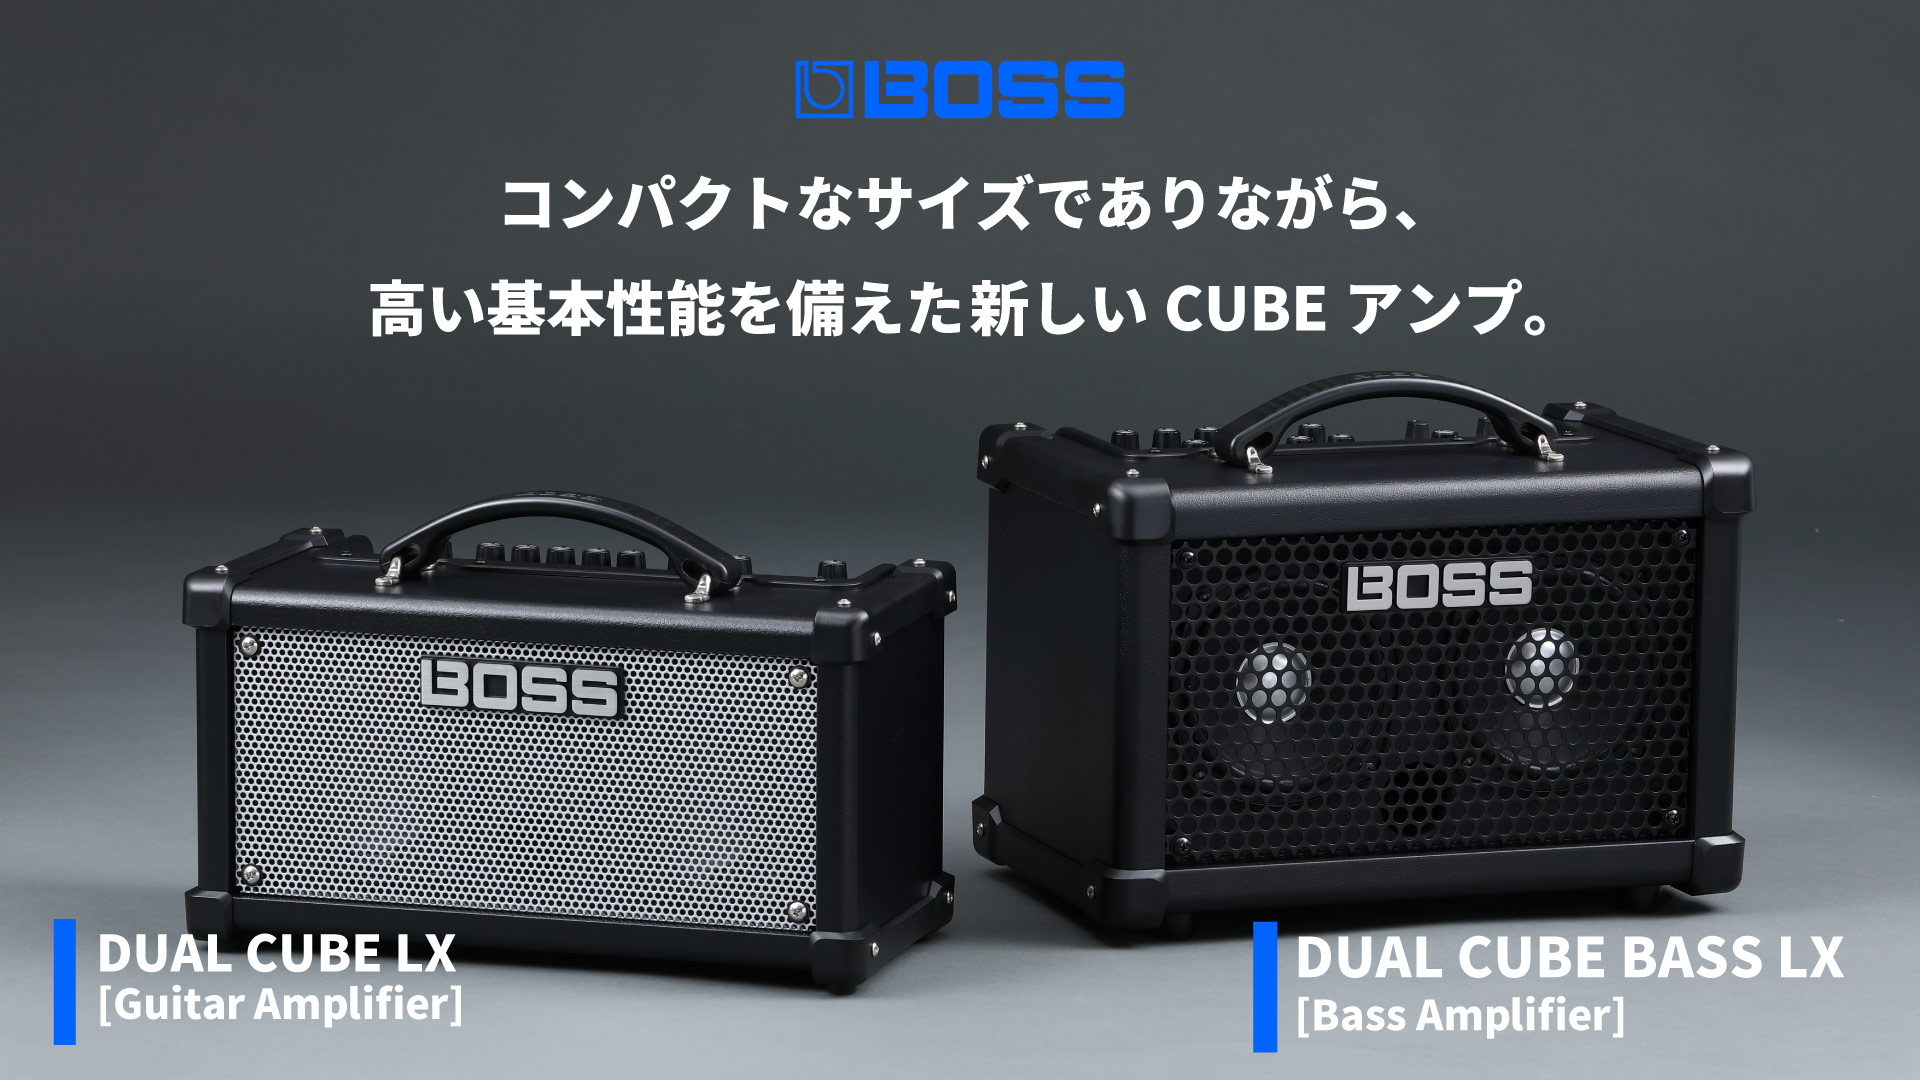 【BOSS】コンパクトなサイズでありながら、高い基本性能を備えた新しいCUBEアンプ『DUAL CUBE LX / DUAL CUBE LX BASS』が新登場！